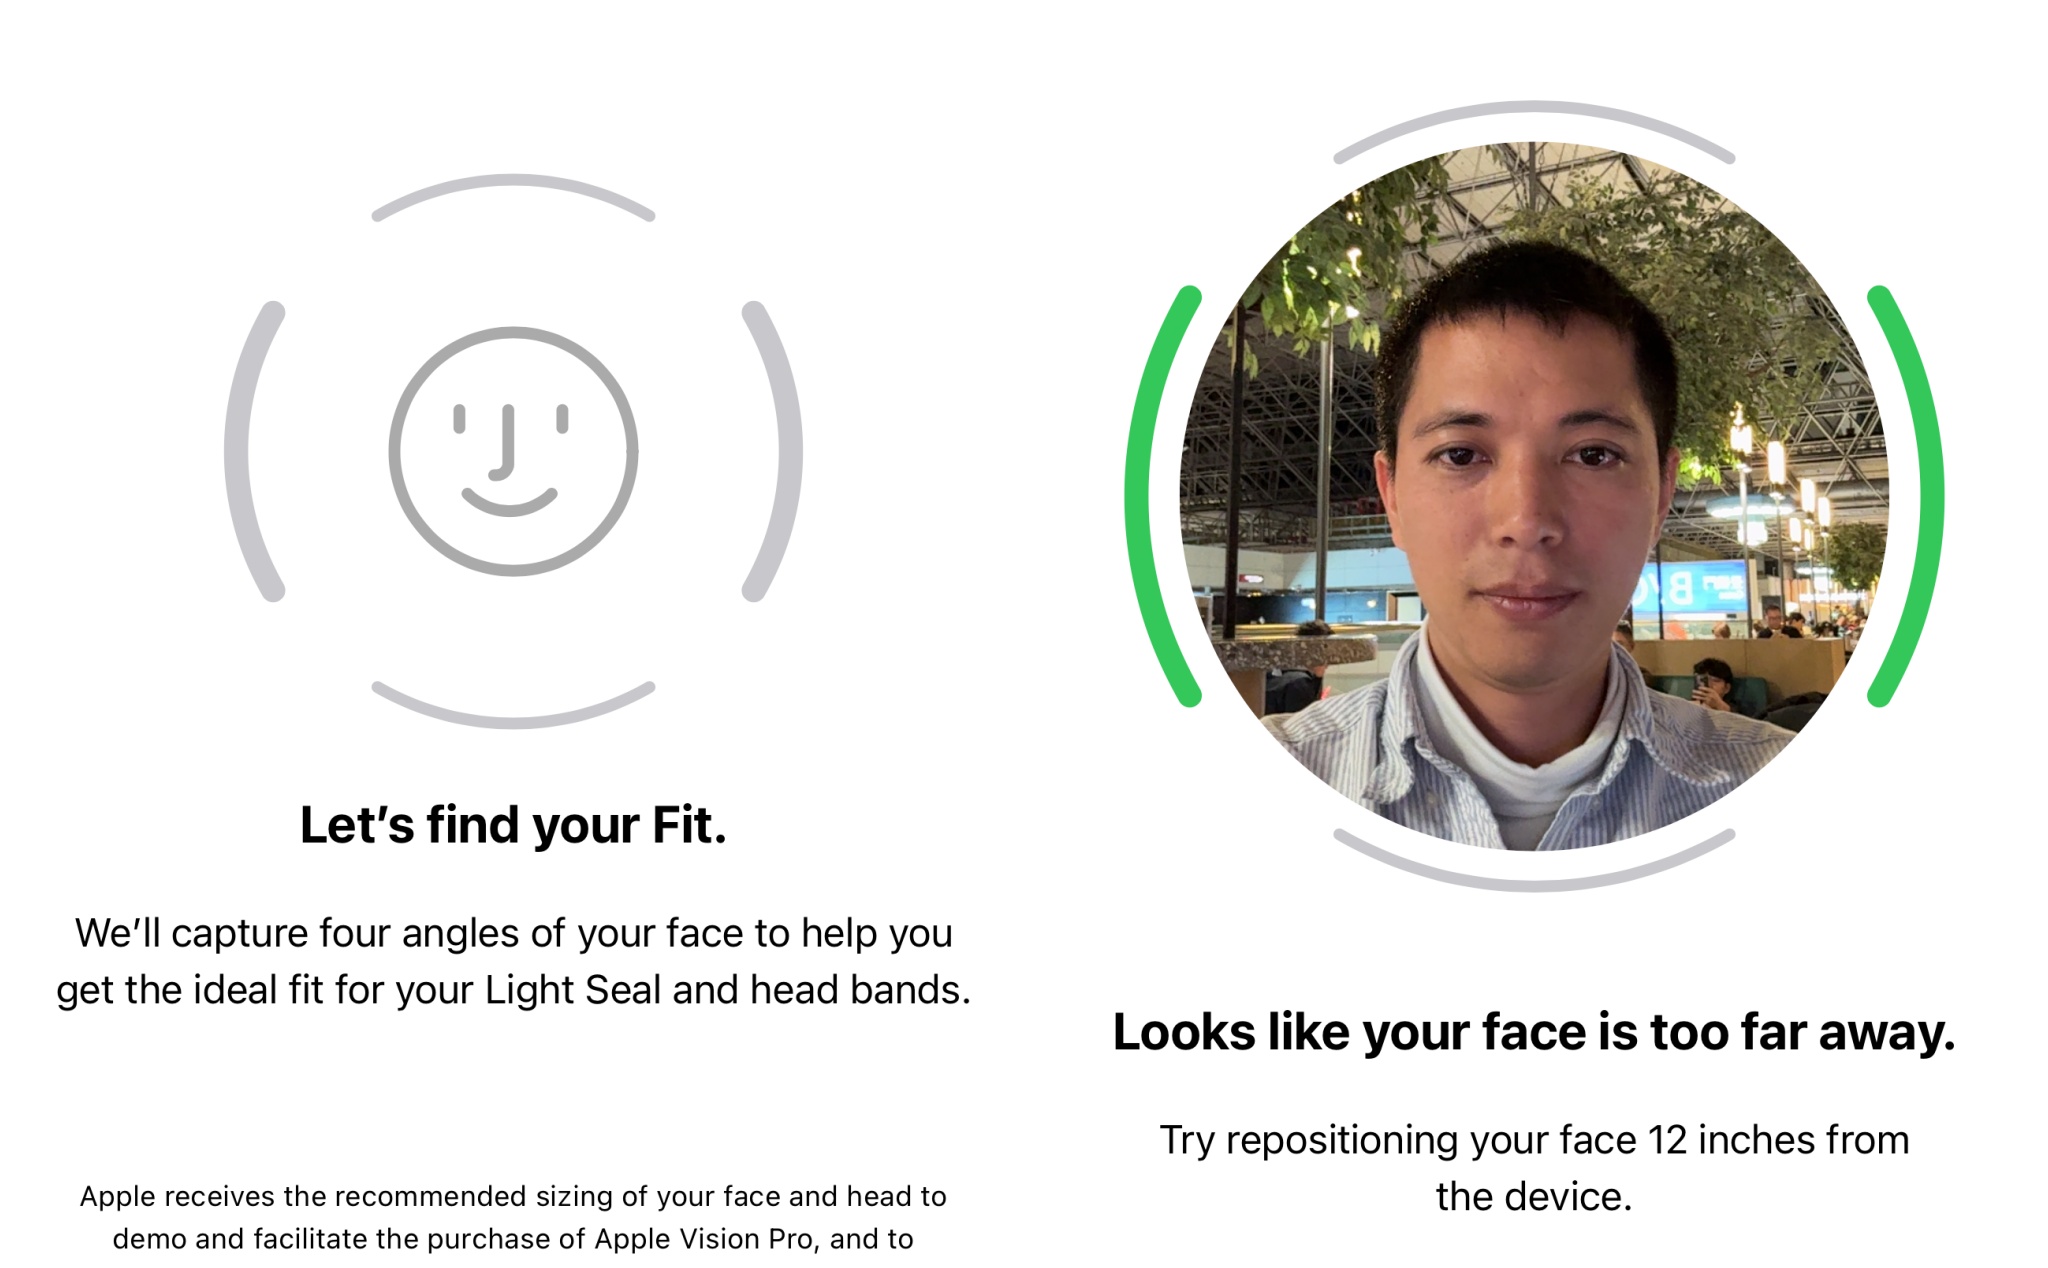 [Video] Thực tế quá trình đặt mua Apple Vision Pro tại Mỹ, cần có Face ID để đo đầu